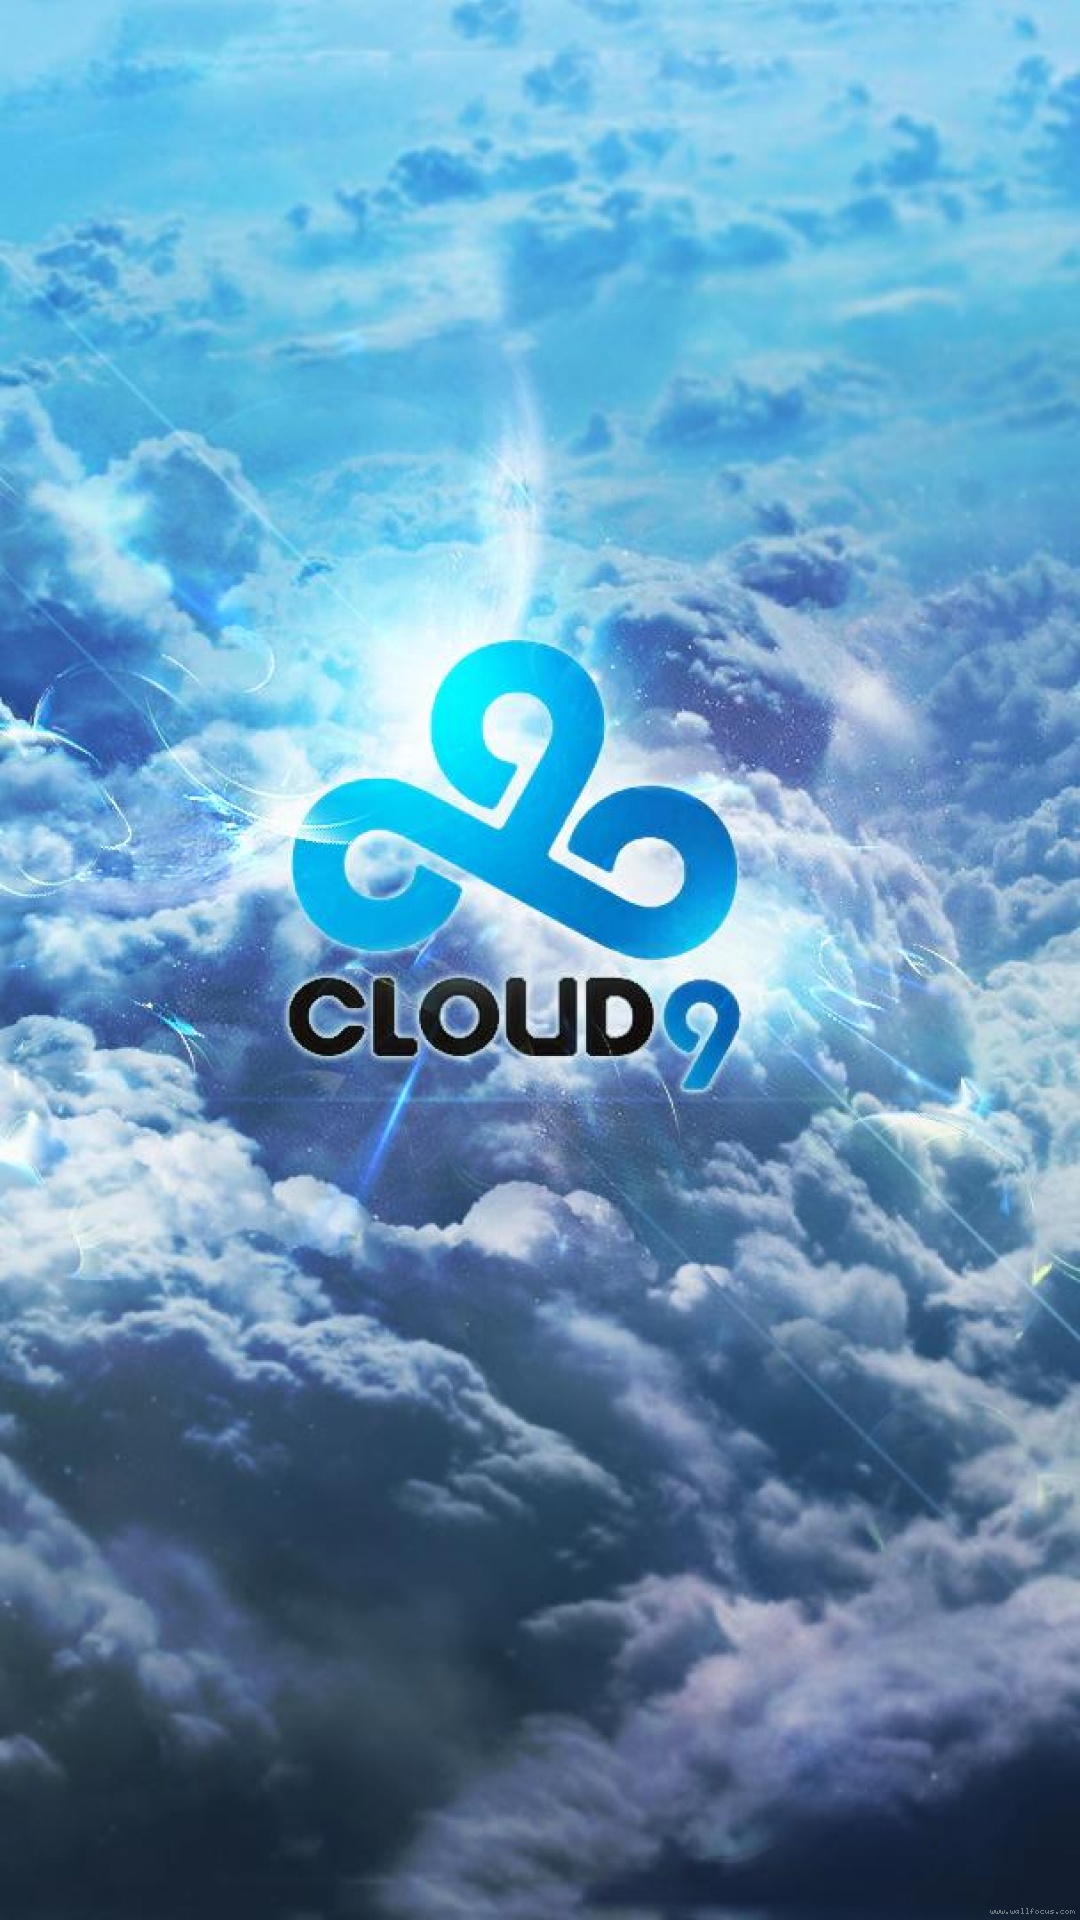 cloud 9 iphone wallpaper,sky,cloud,daytime,atmosphere,blue